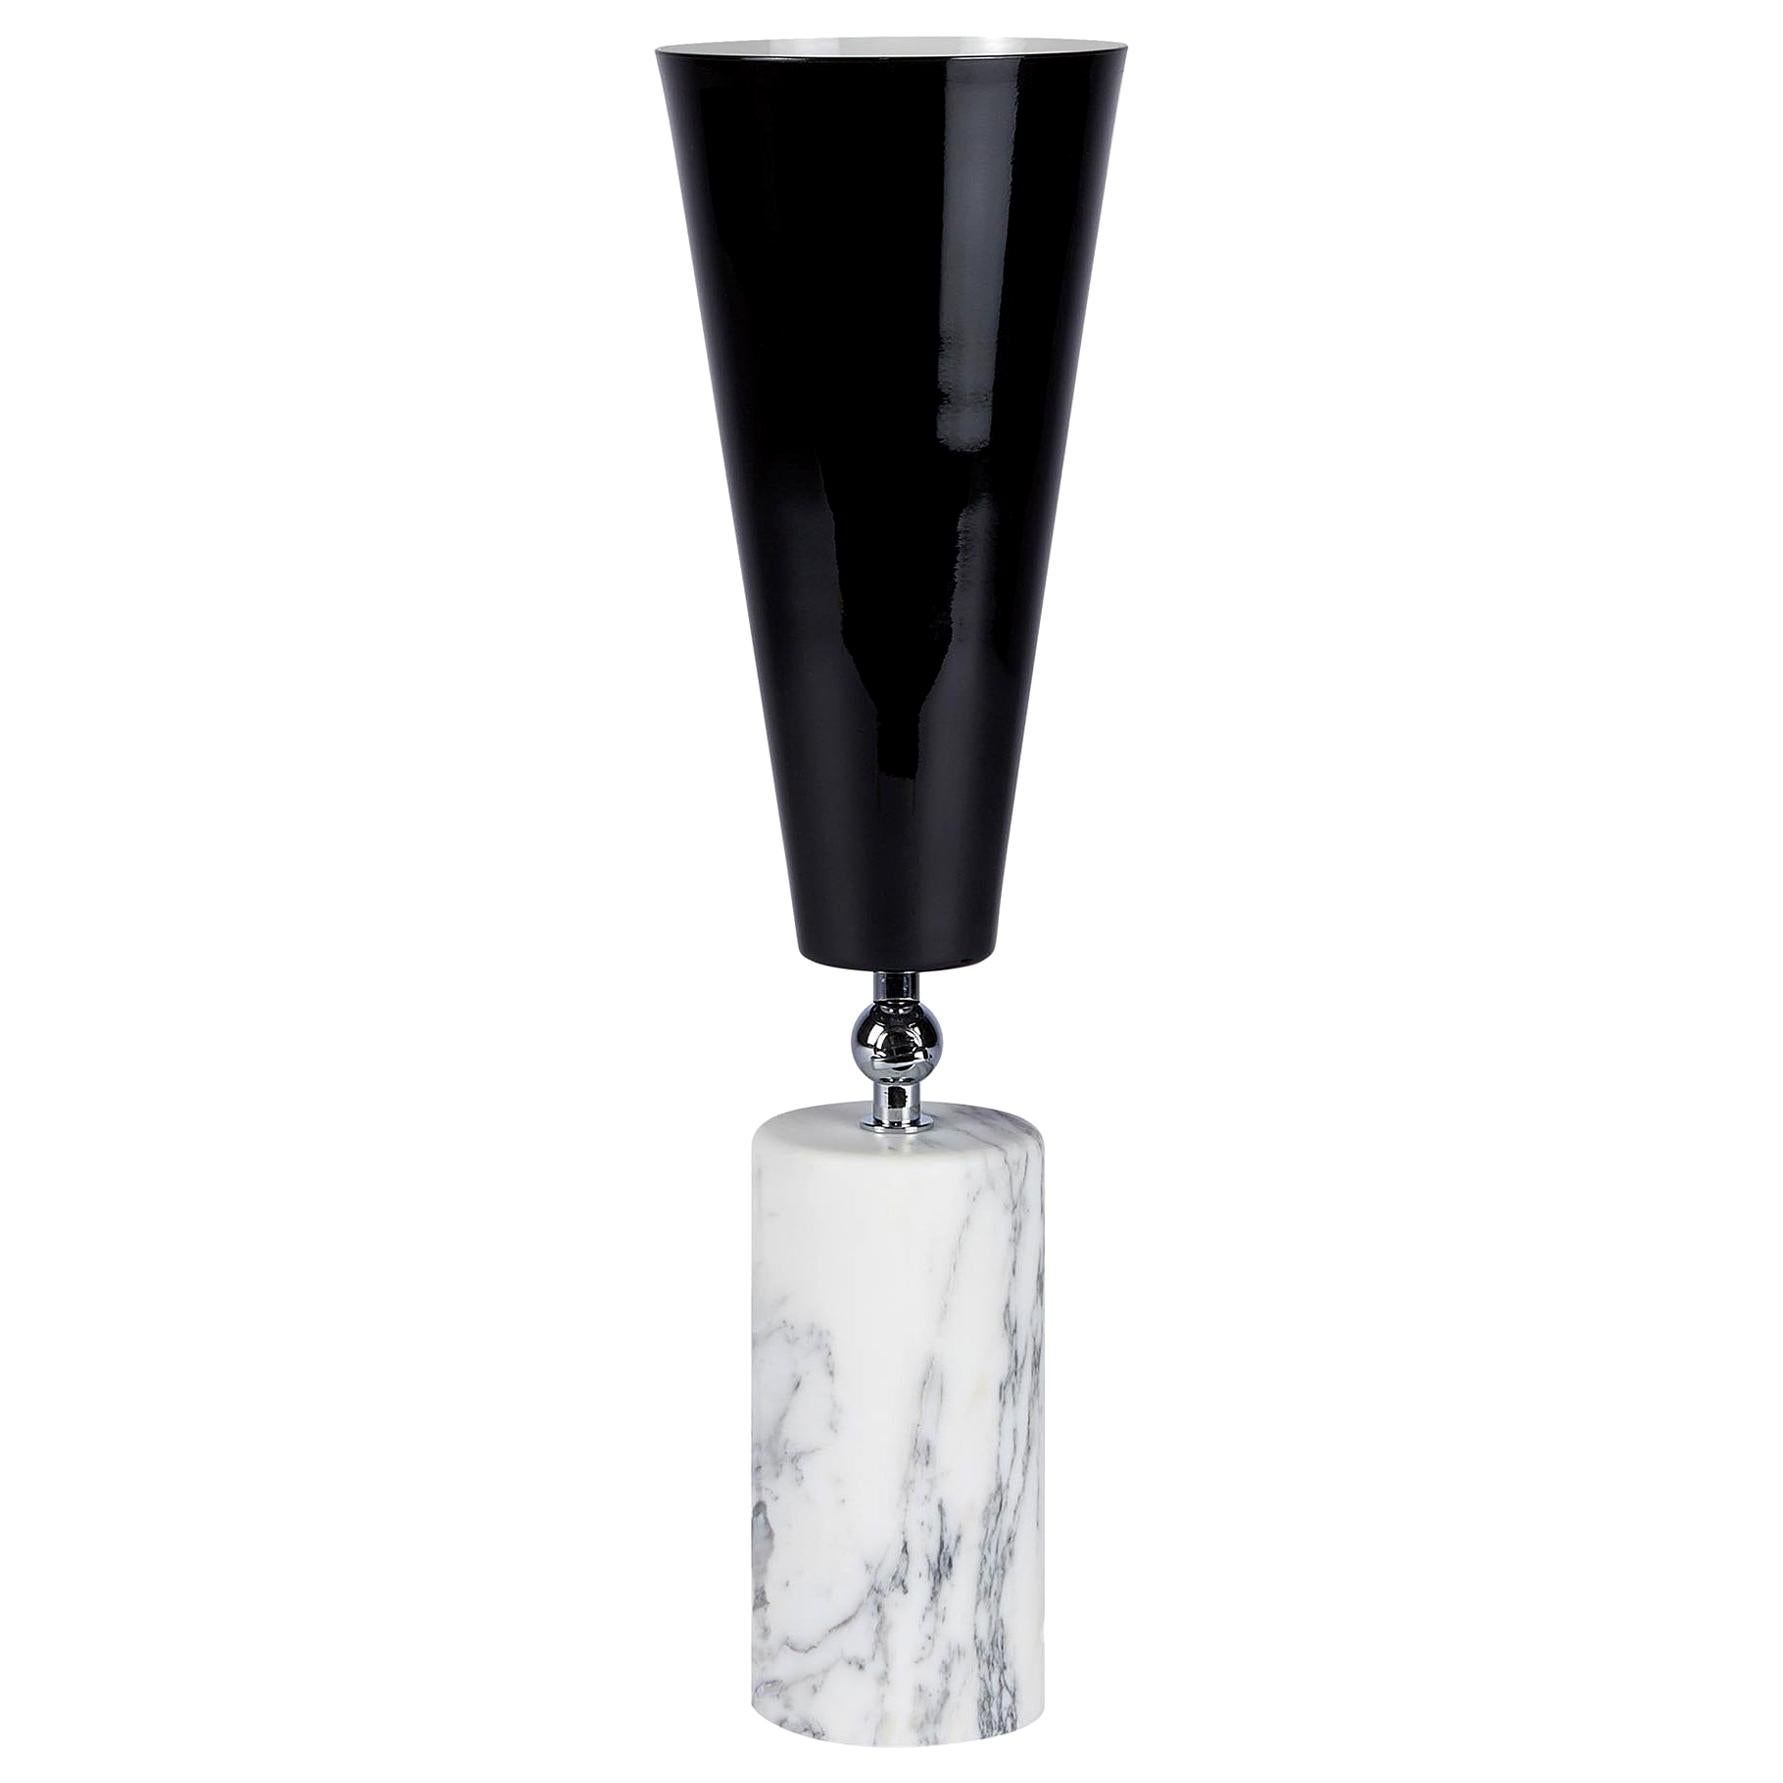 Tato Italia 'Vox' Tischlampe aus weißem Carrara-Marmor, Chrom und glänzendem Schwarz